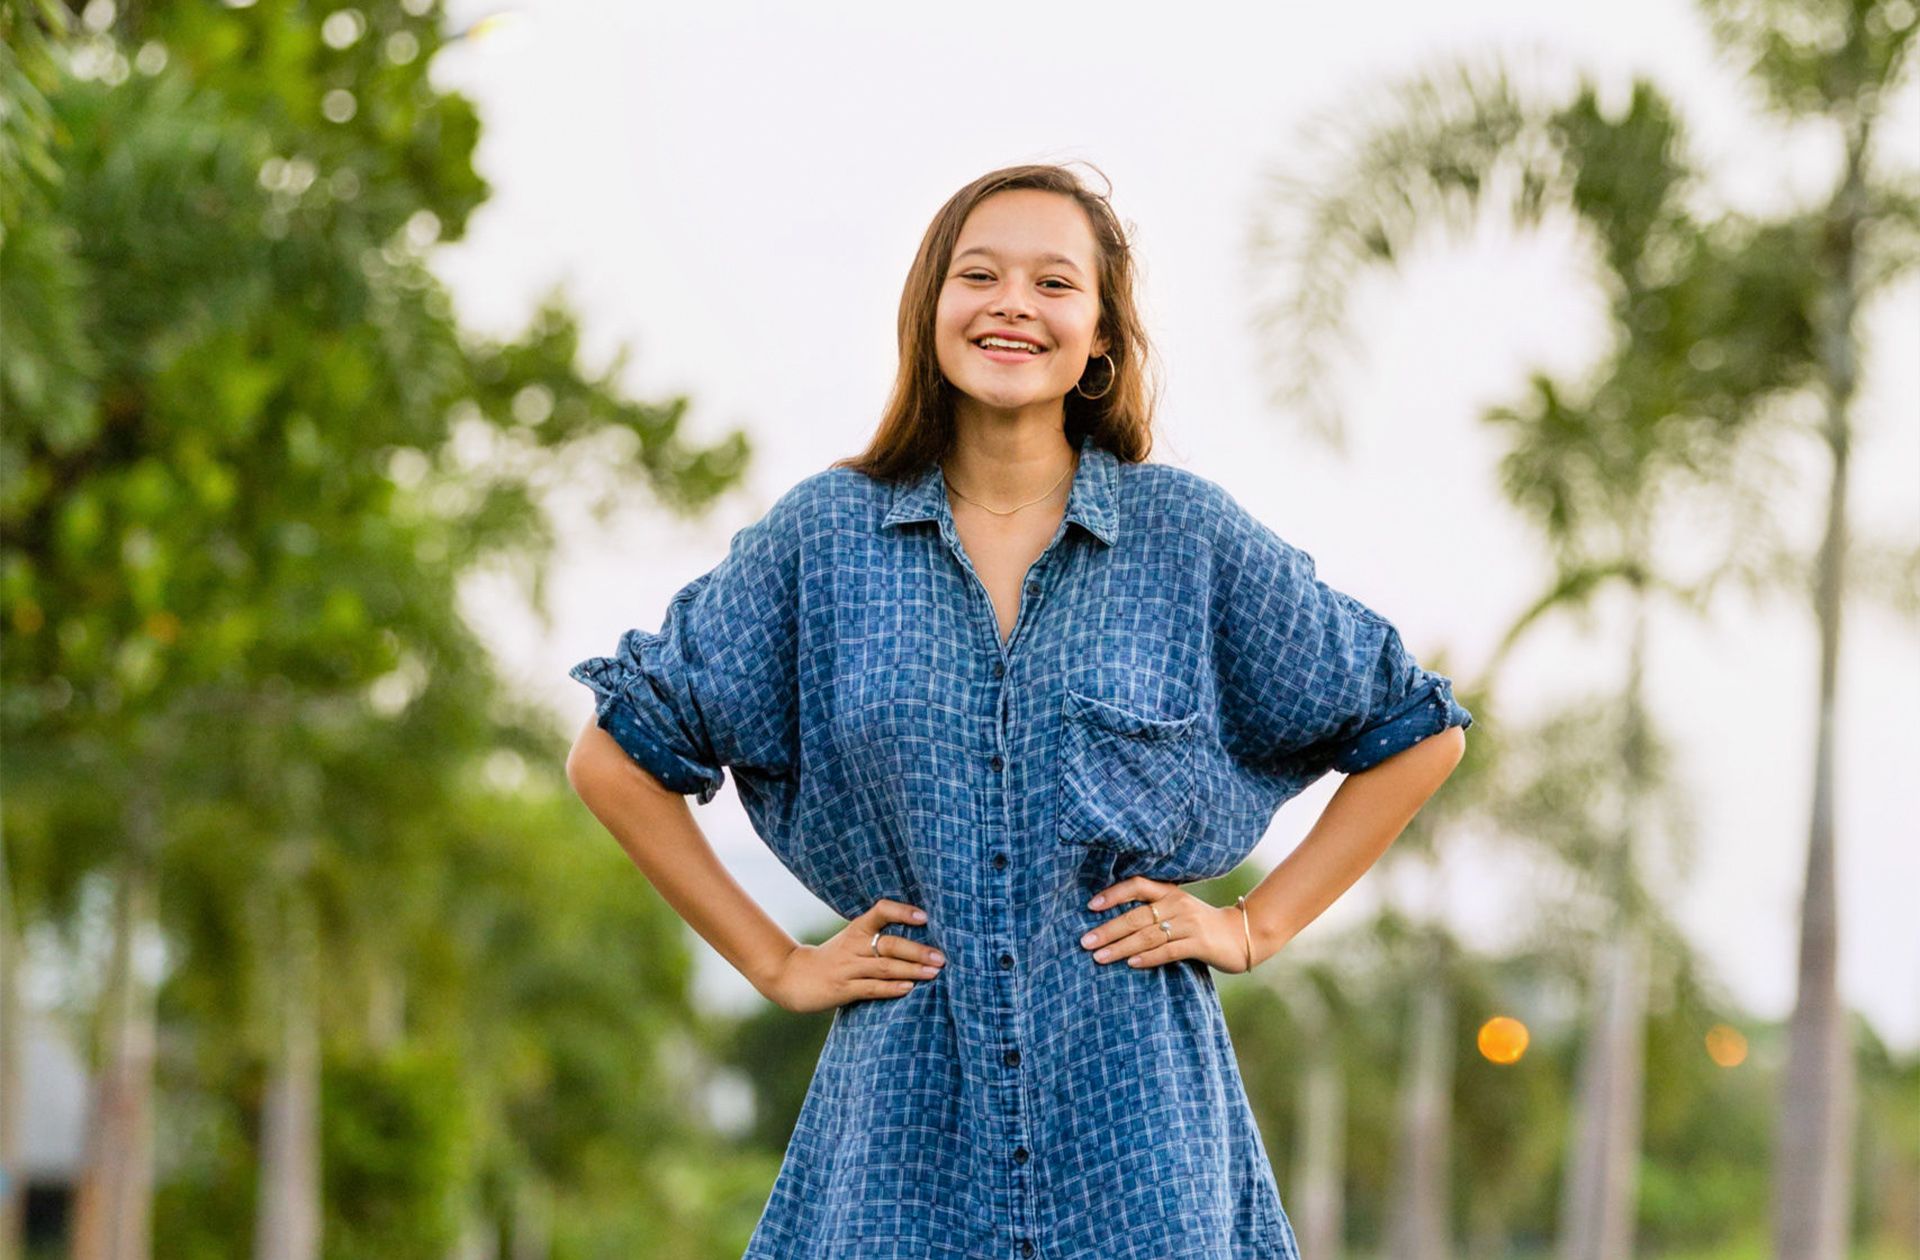 Melati Wijsen, 20 ans, militante, a fondé l'initiative Bye Bye Plastic Bags, qui vise à interdire le plastique à usage unique sur l'île de Bali, alors qu'elle n'avait que 12 ans. Son dernier projet, YOUTHOPIA, est une plateforme mondiale qui vise à former une génération d'activistes, en leur fournissant les outils dont ils ont besoin pour apporter des changements positifs.